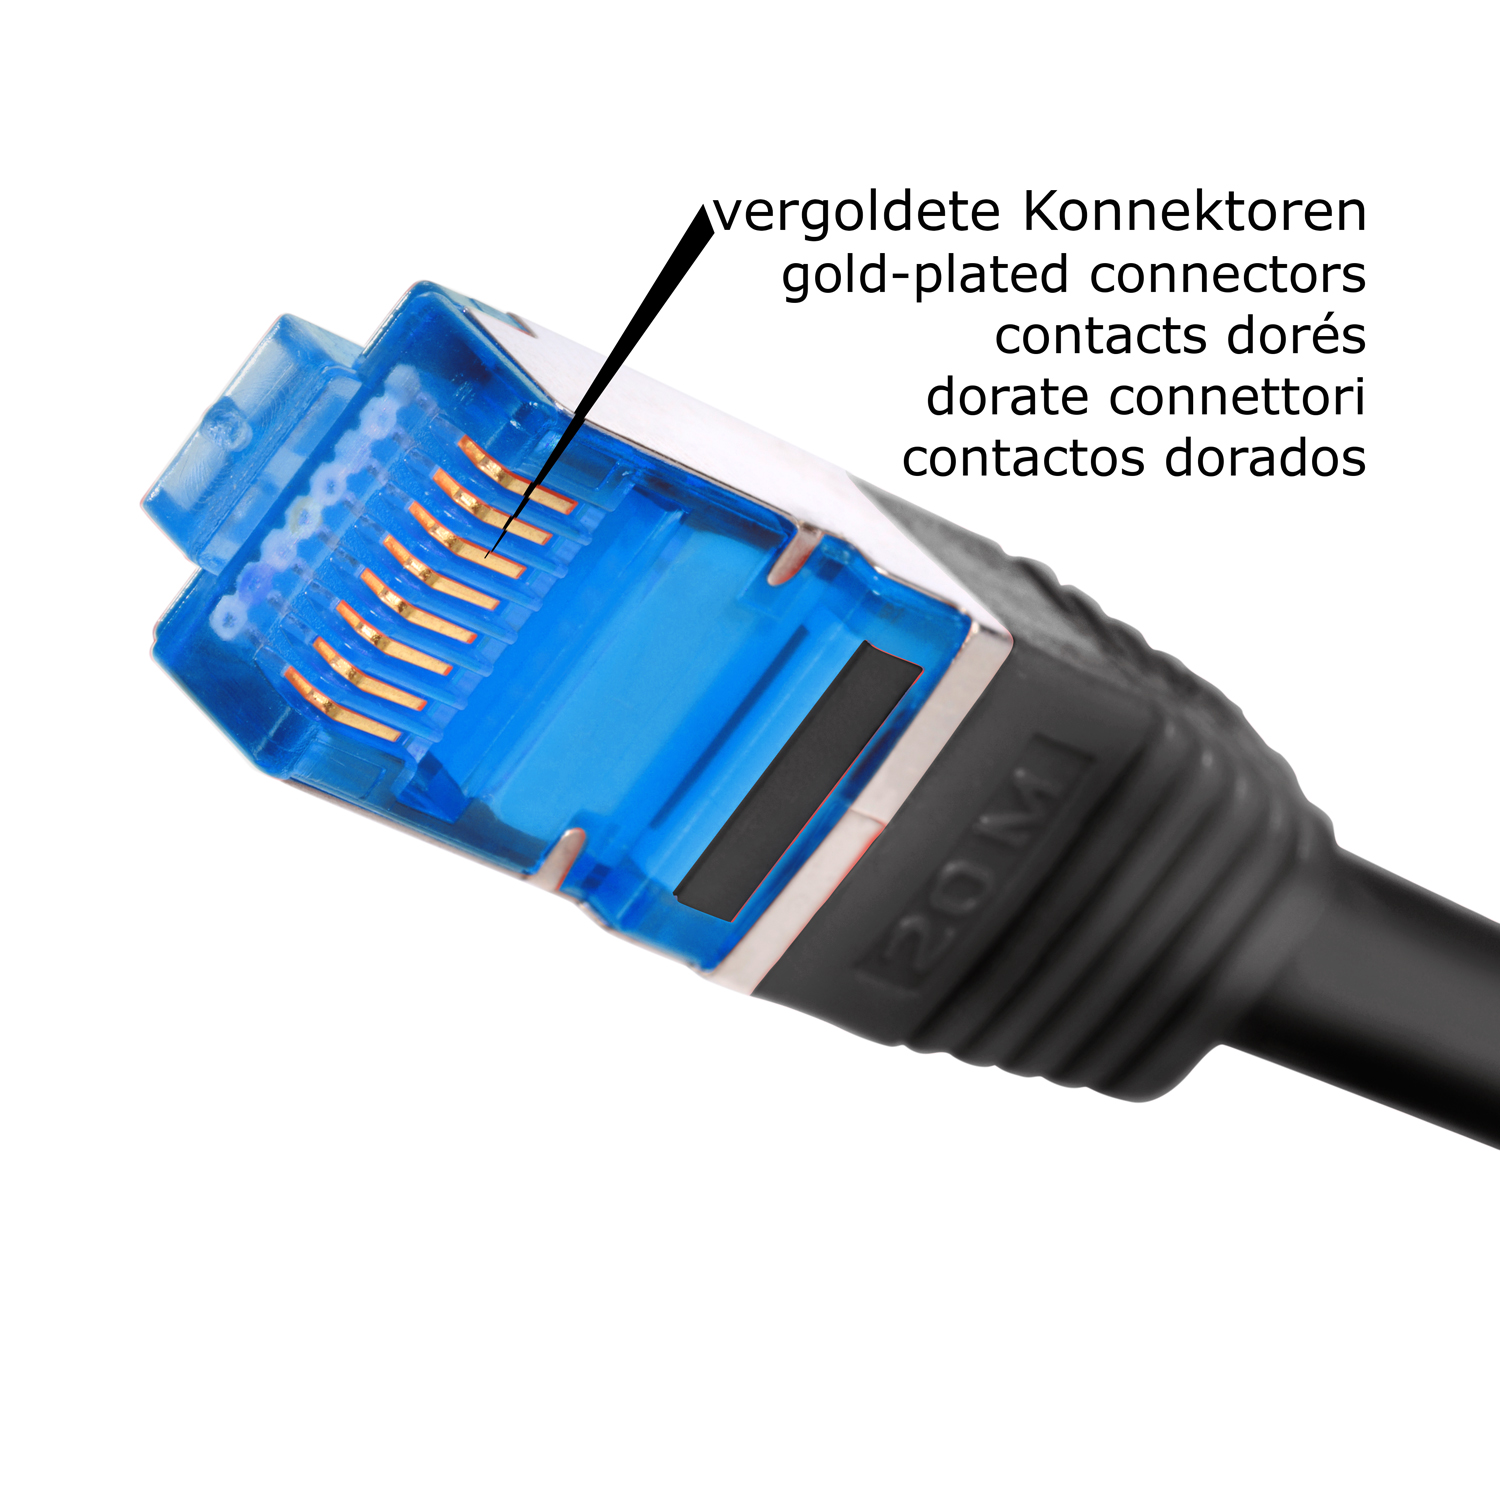 S/FTP Patchkabel / TPFNET 10 Netzwerkkabel, 10GBit, 10m Netzwerkkabel schwarz, m